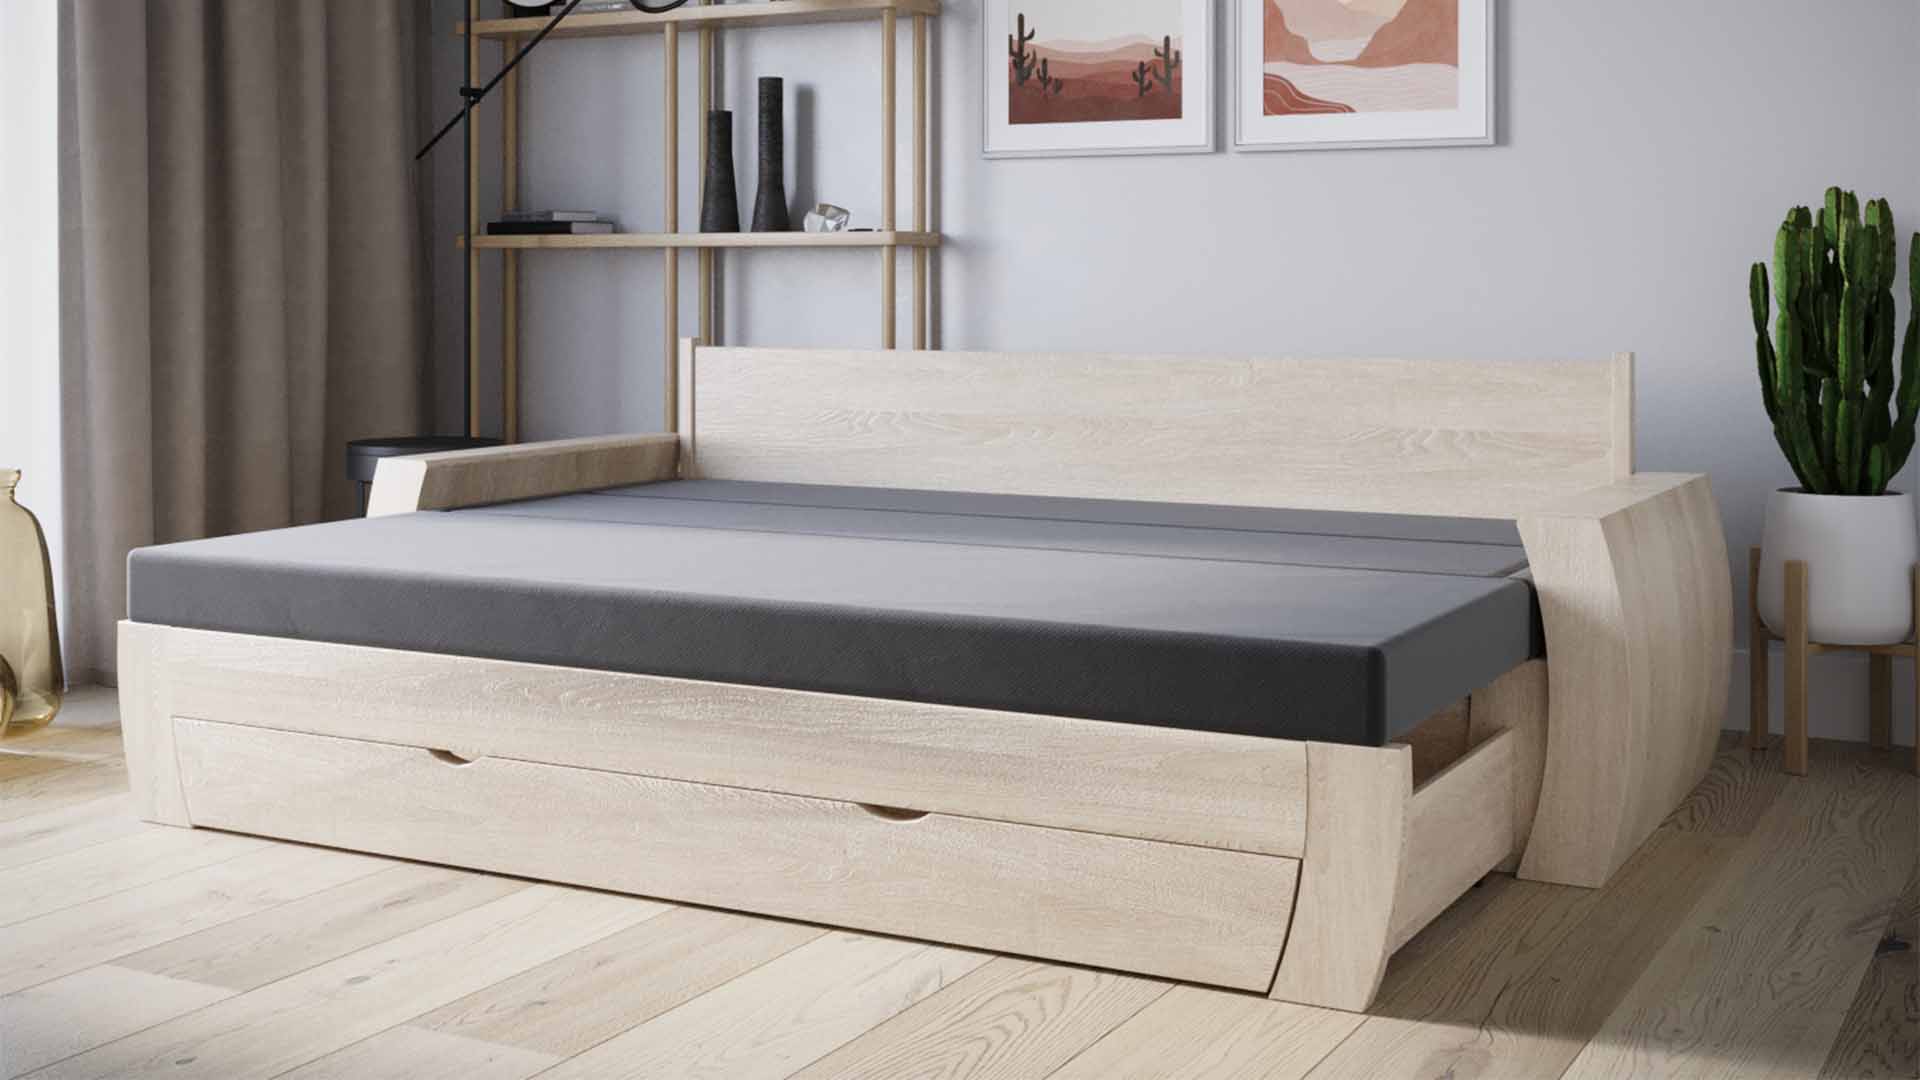 Drewniana kanapa, którą zmienisz w pełnowymiarowe łóżko jednym pociągnięciem ręki